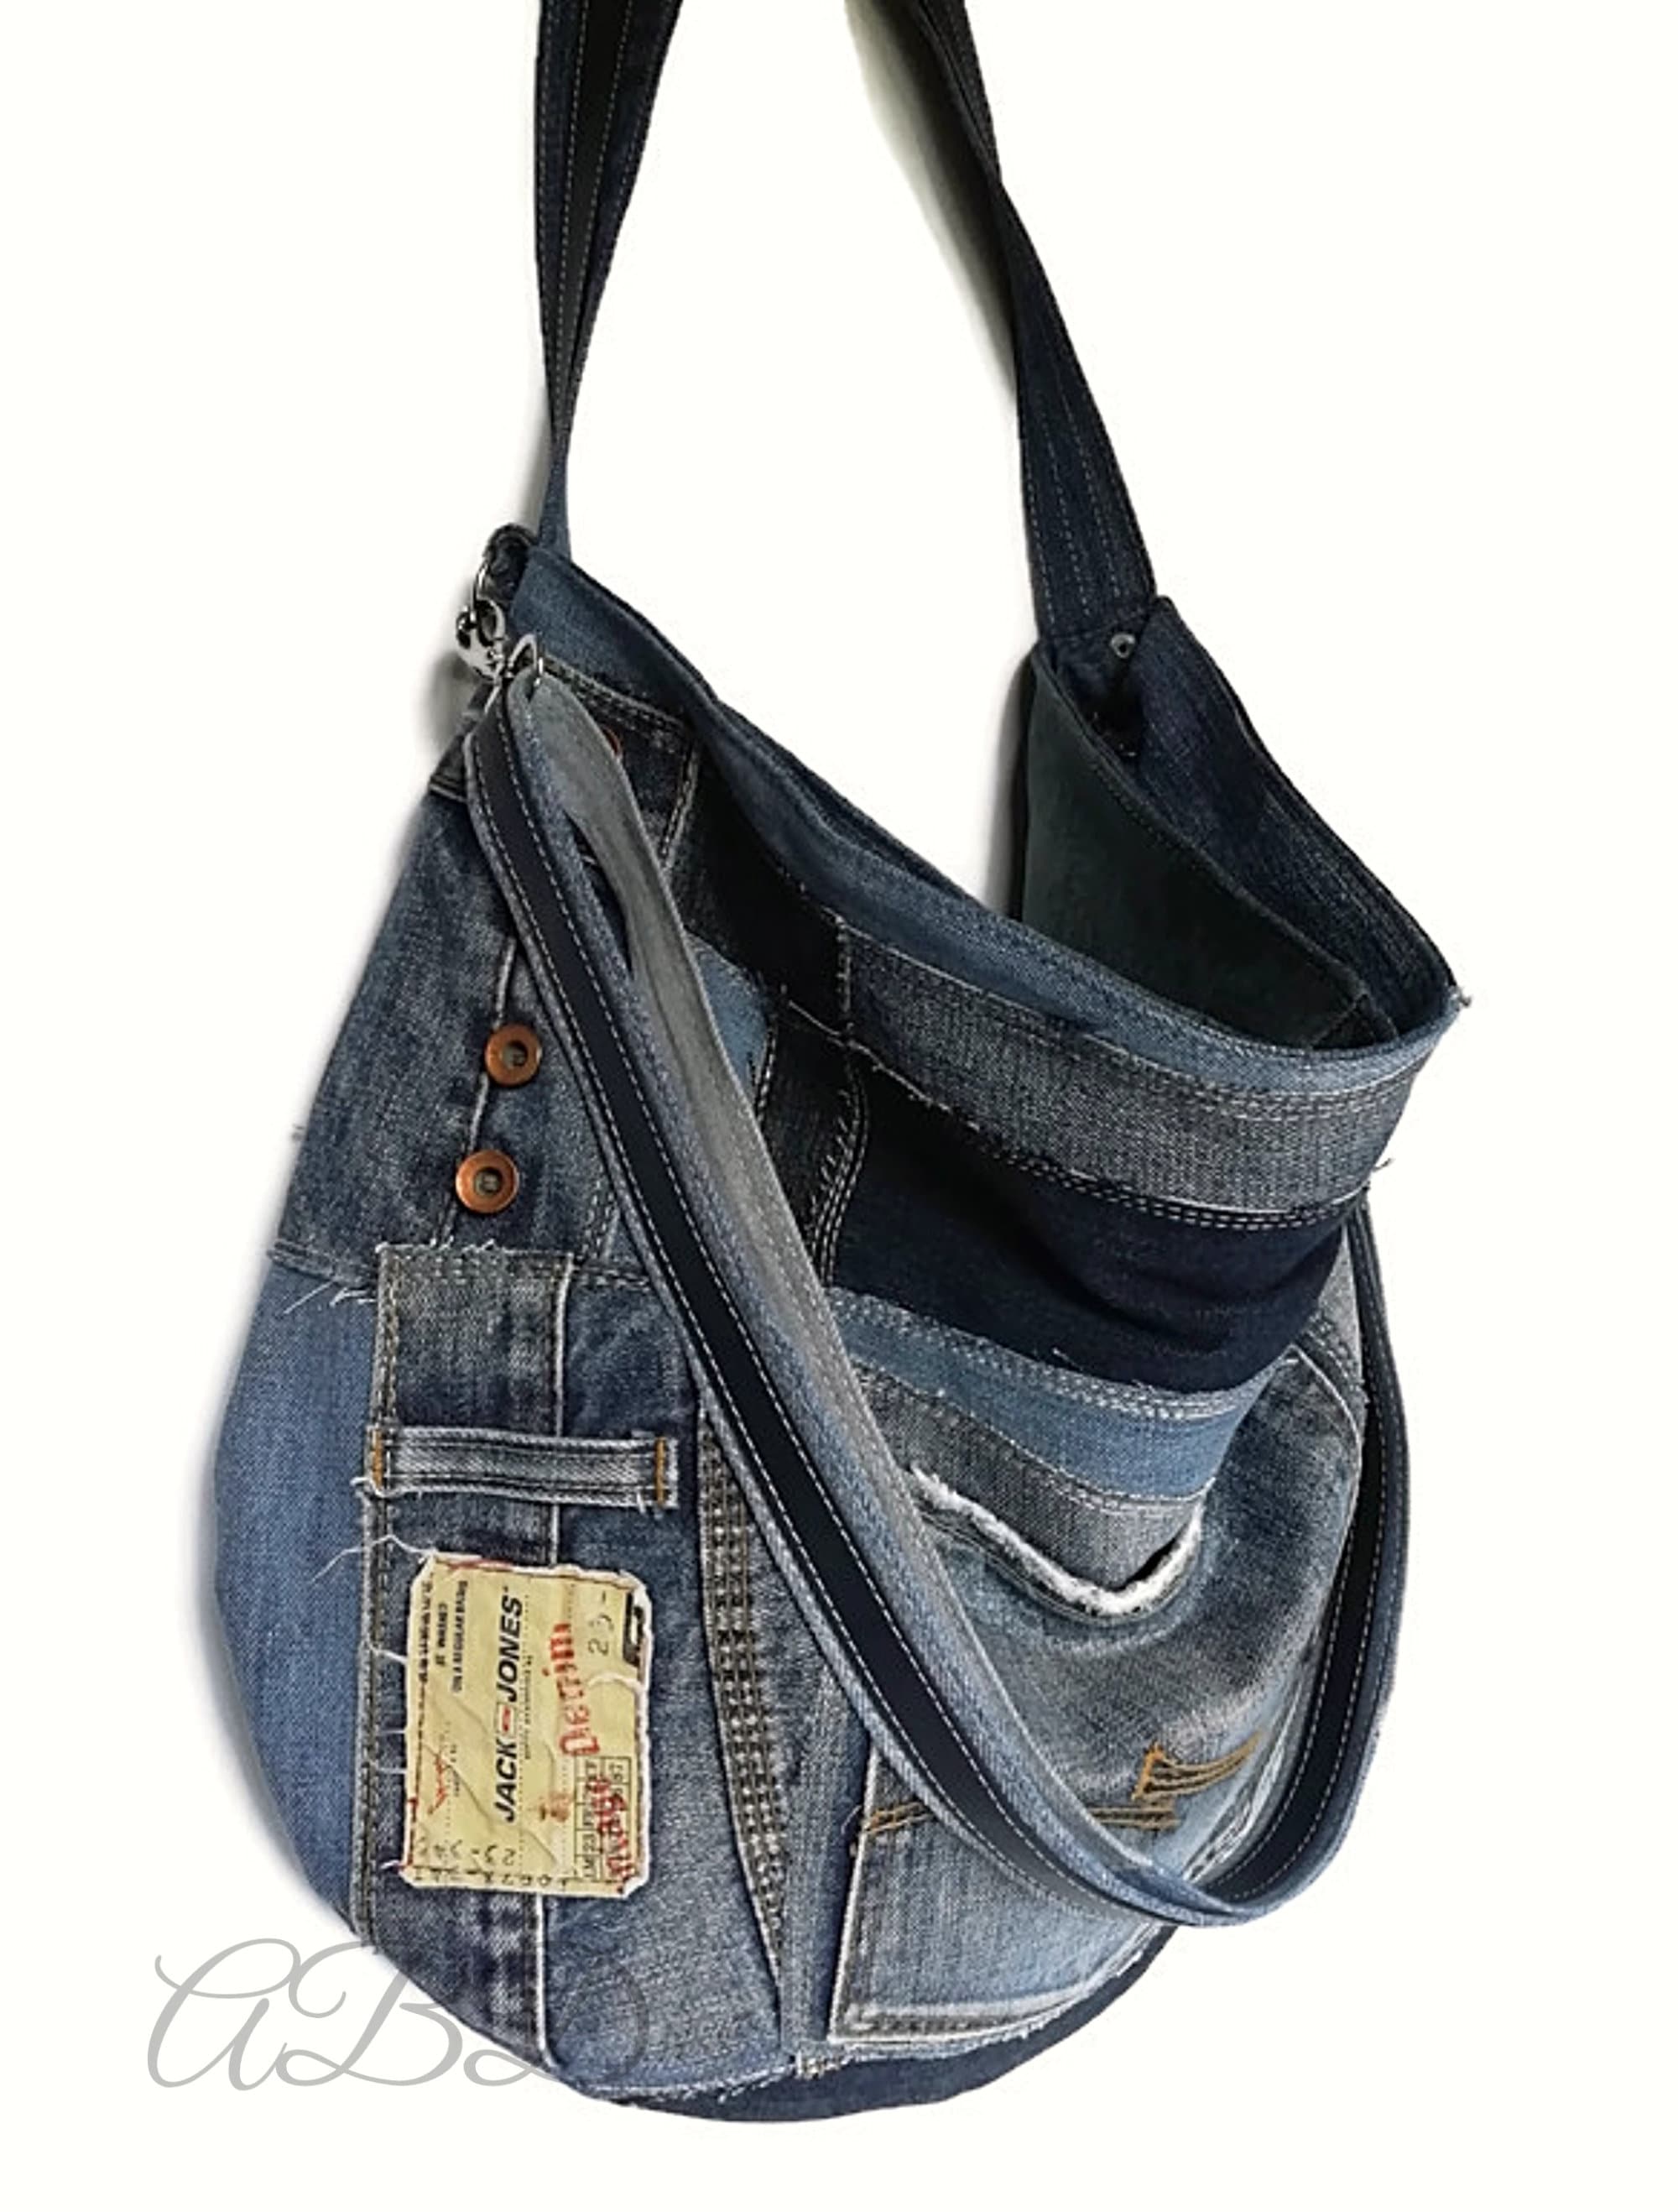 Recycled jeans bag Large denim bag Jeans handbag Denim handbag | Etsy